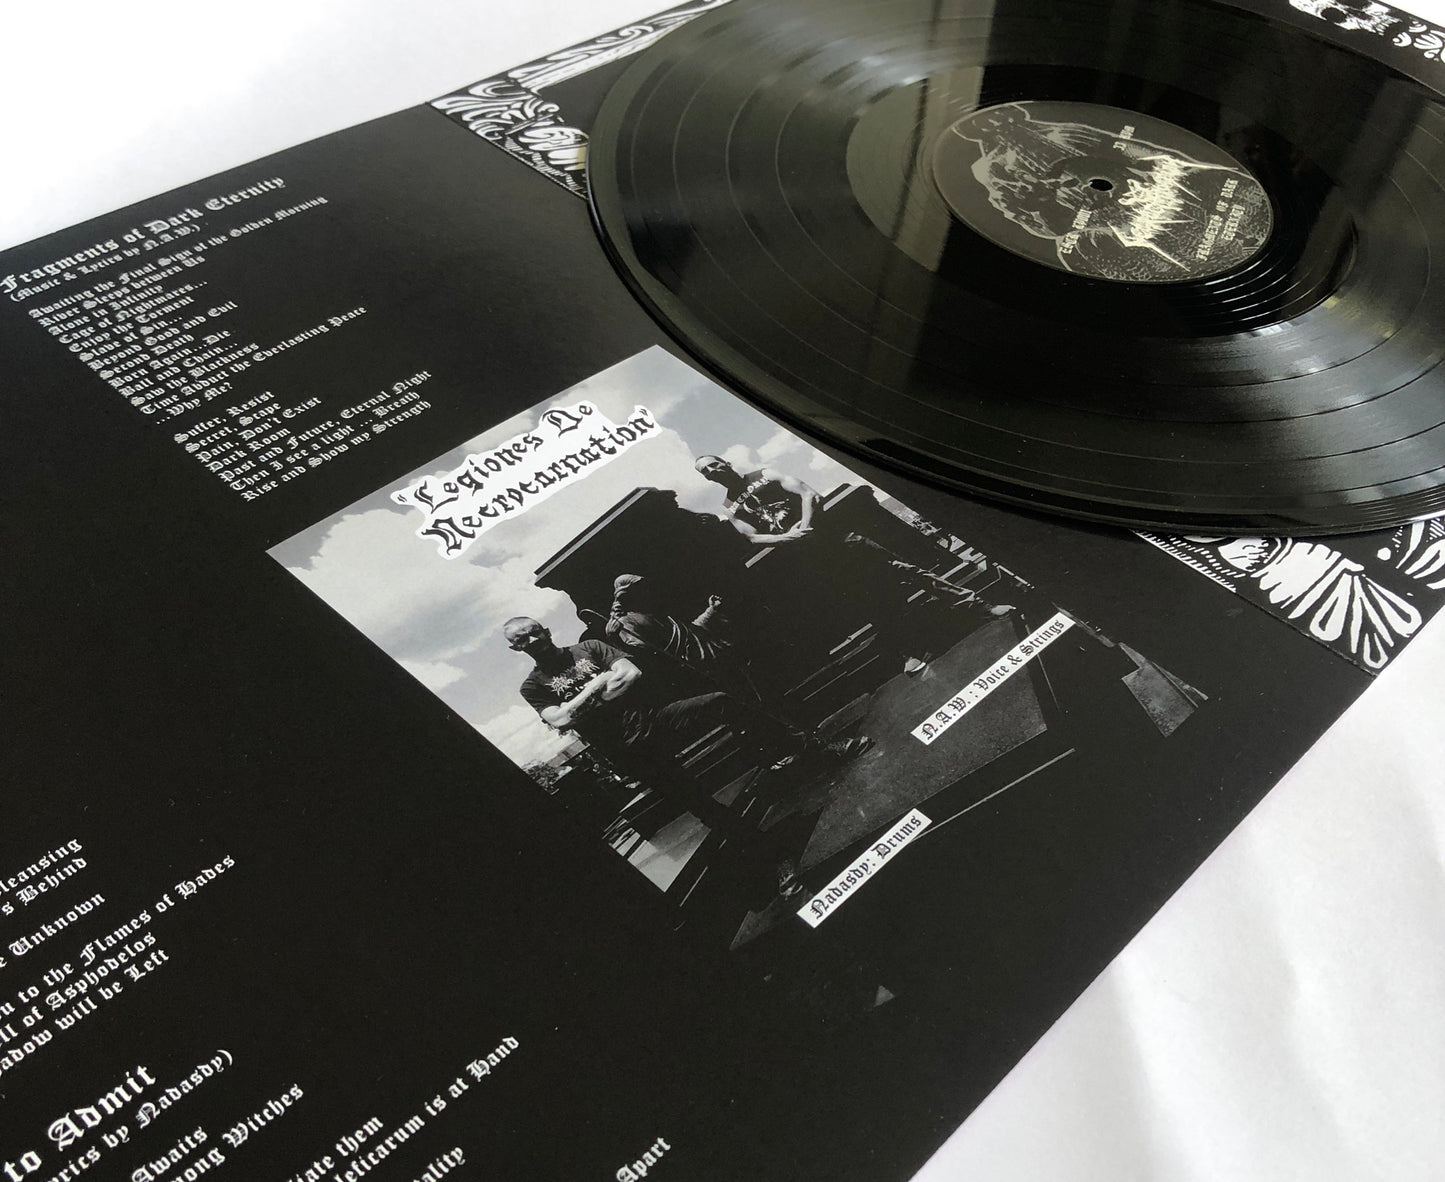 ESCR-LP001: Necrocarnation (INT) "Fragments of Dark Eternity" - 12" LP